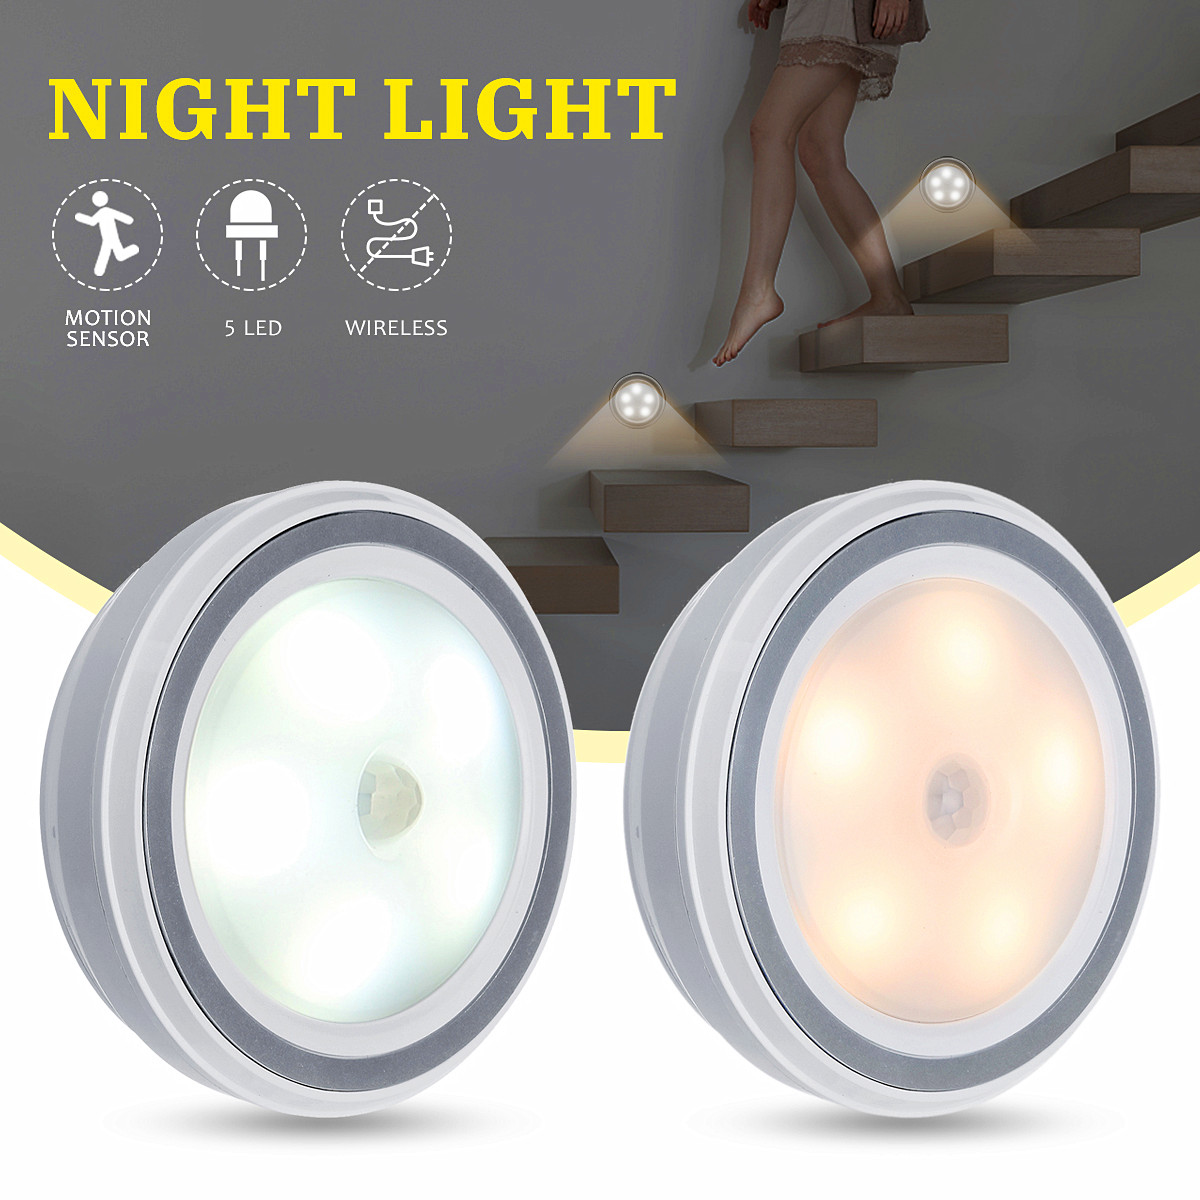 

5 LED Беспроводной PIR Auto Motion Датчик Инфракрасный ночник Кабинет Лестницы Лампа